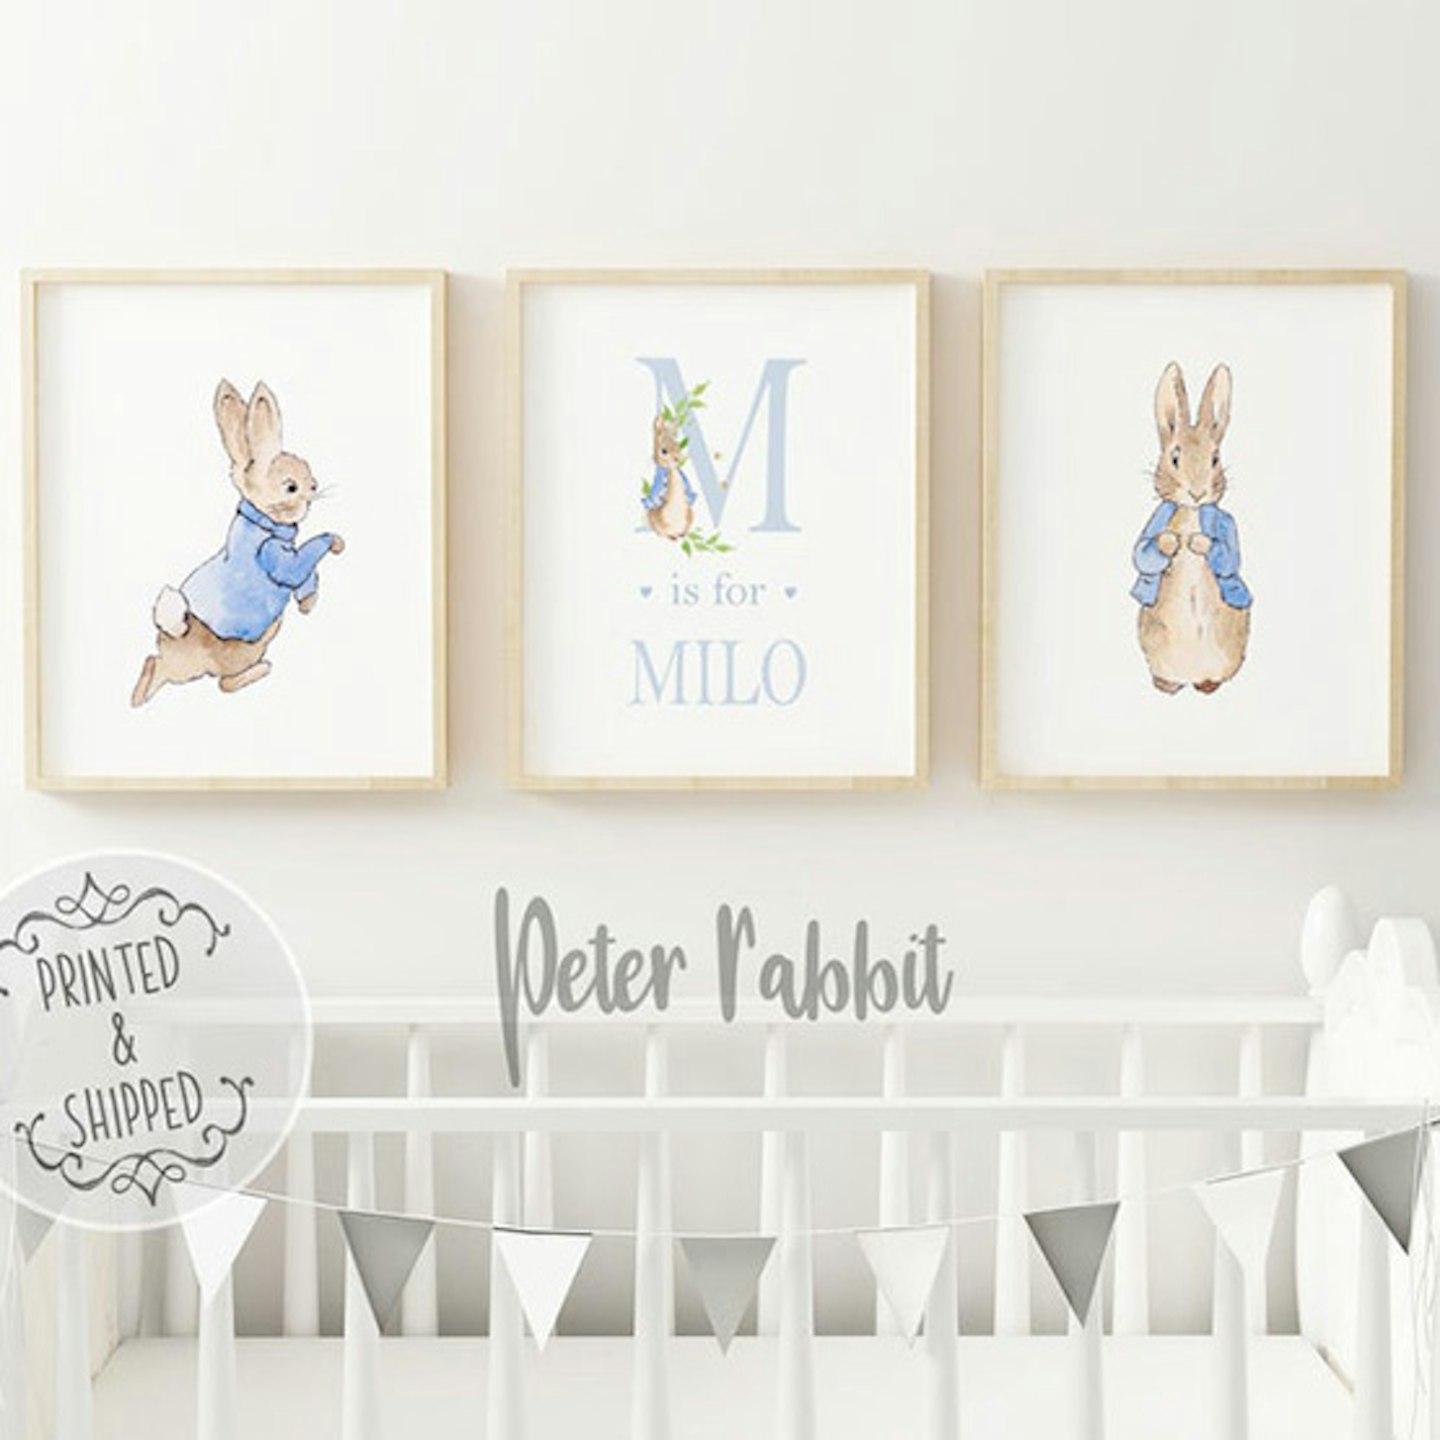 Peter Rabbit Personalised Nursery Prints